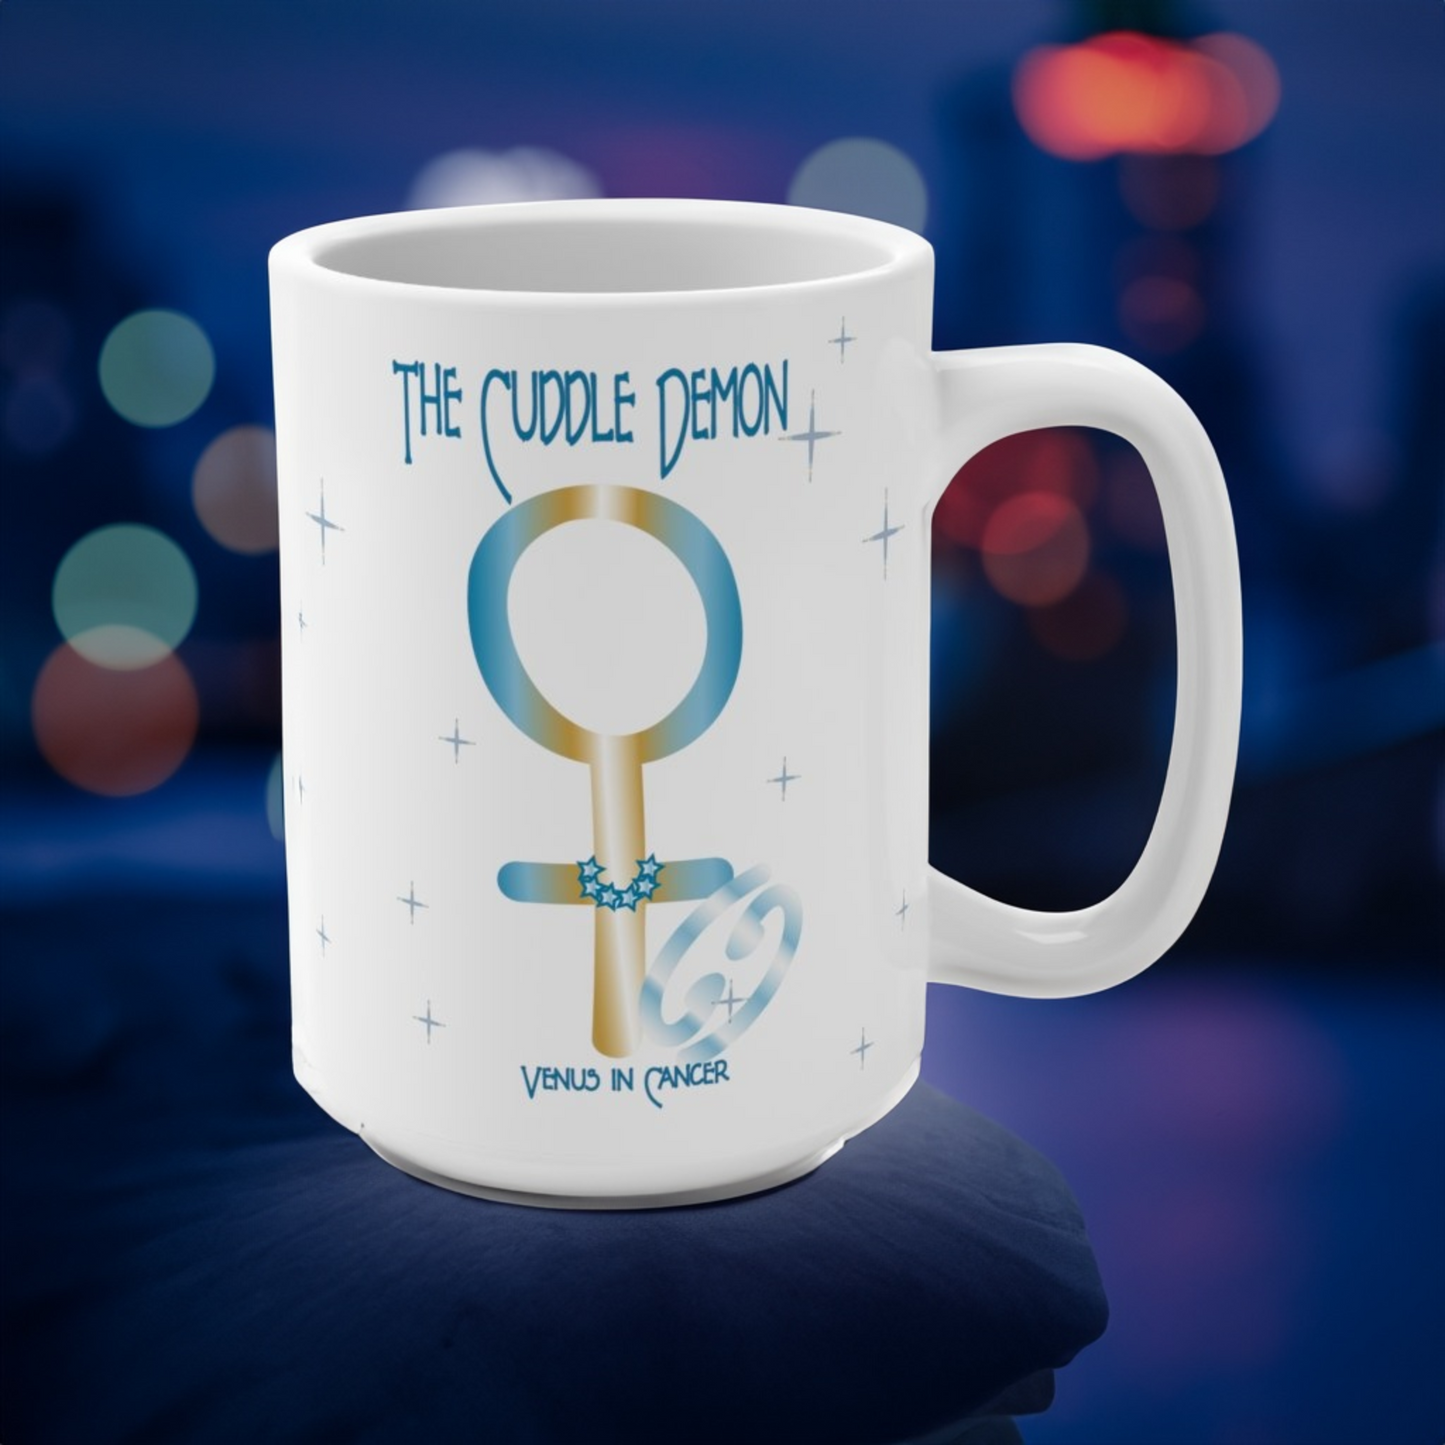 Venus in Cancer Coffee Mug